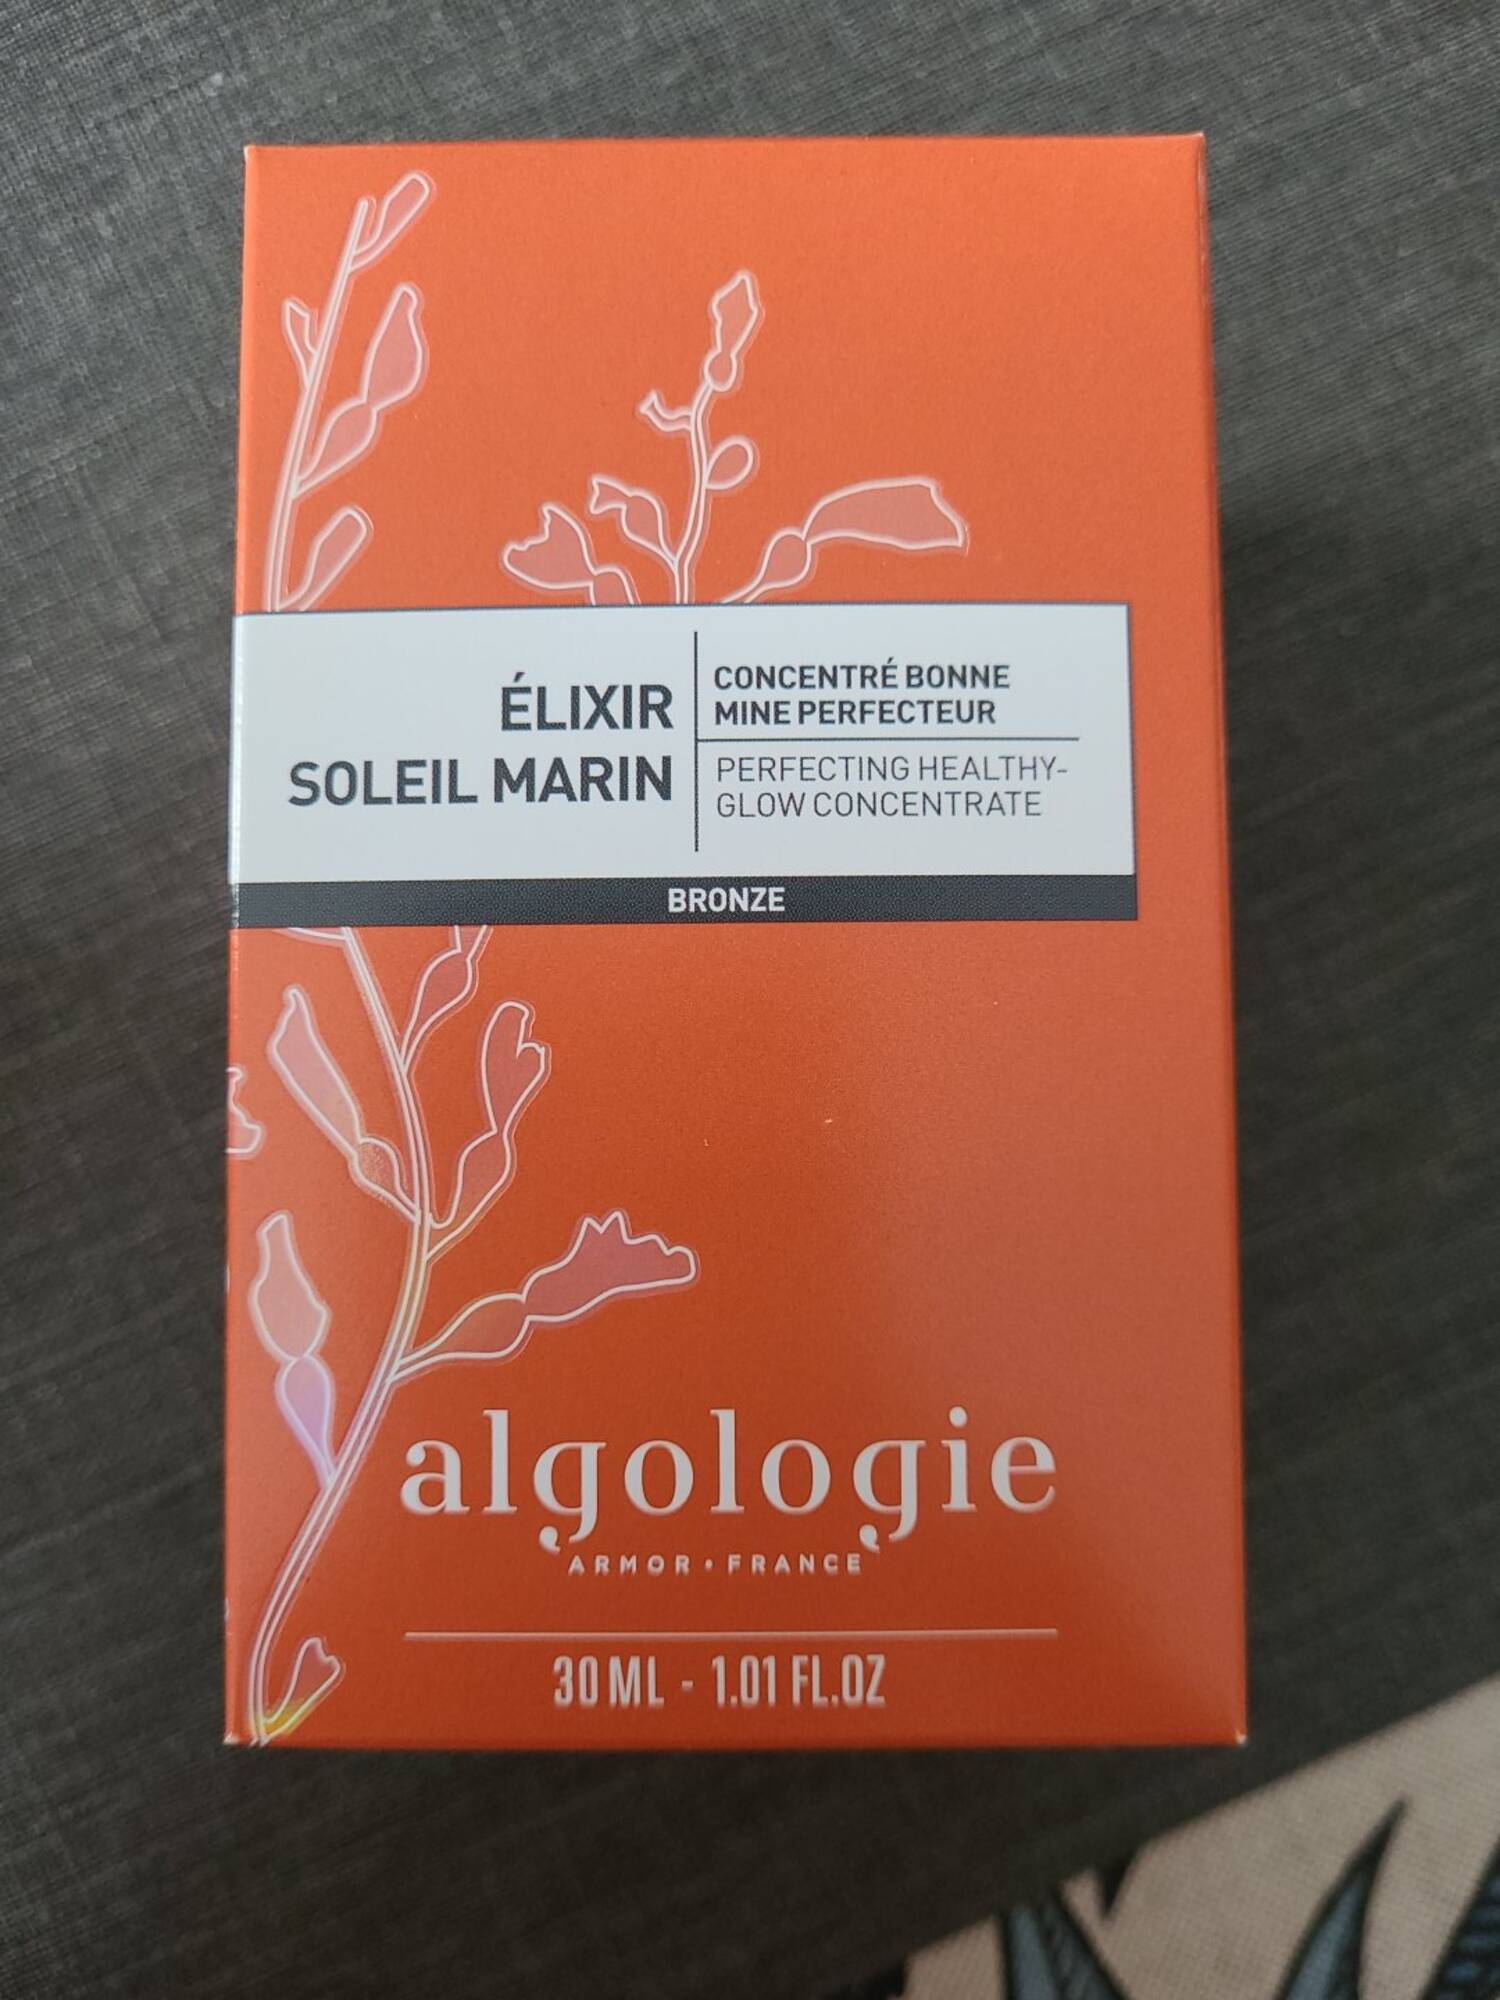 ALGOLOGIE - Élixir soleil marin - Concentré bonne mine perfecteur